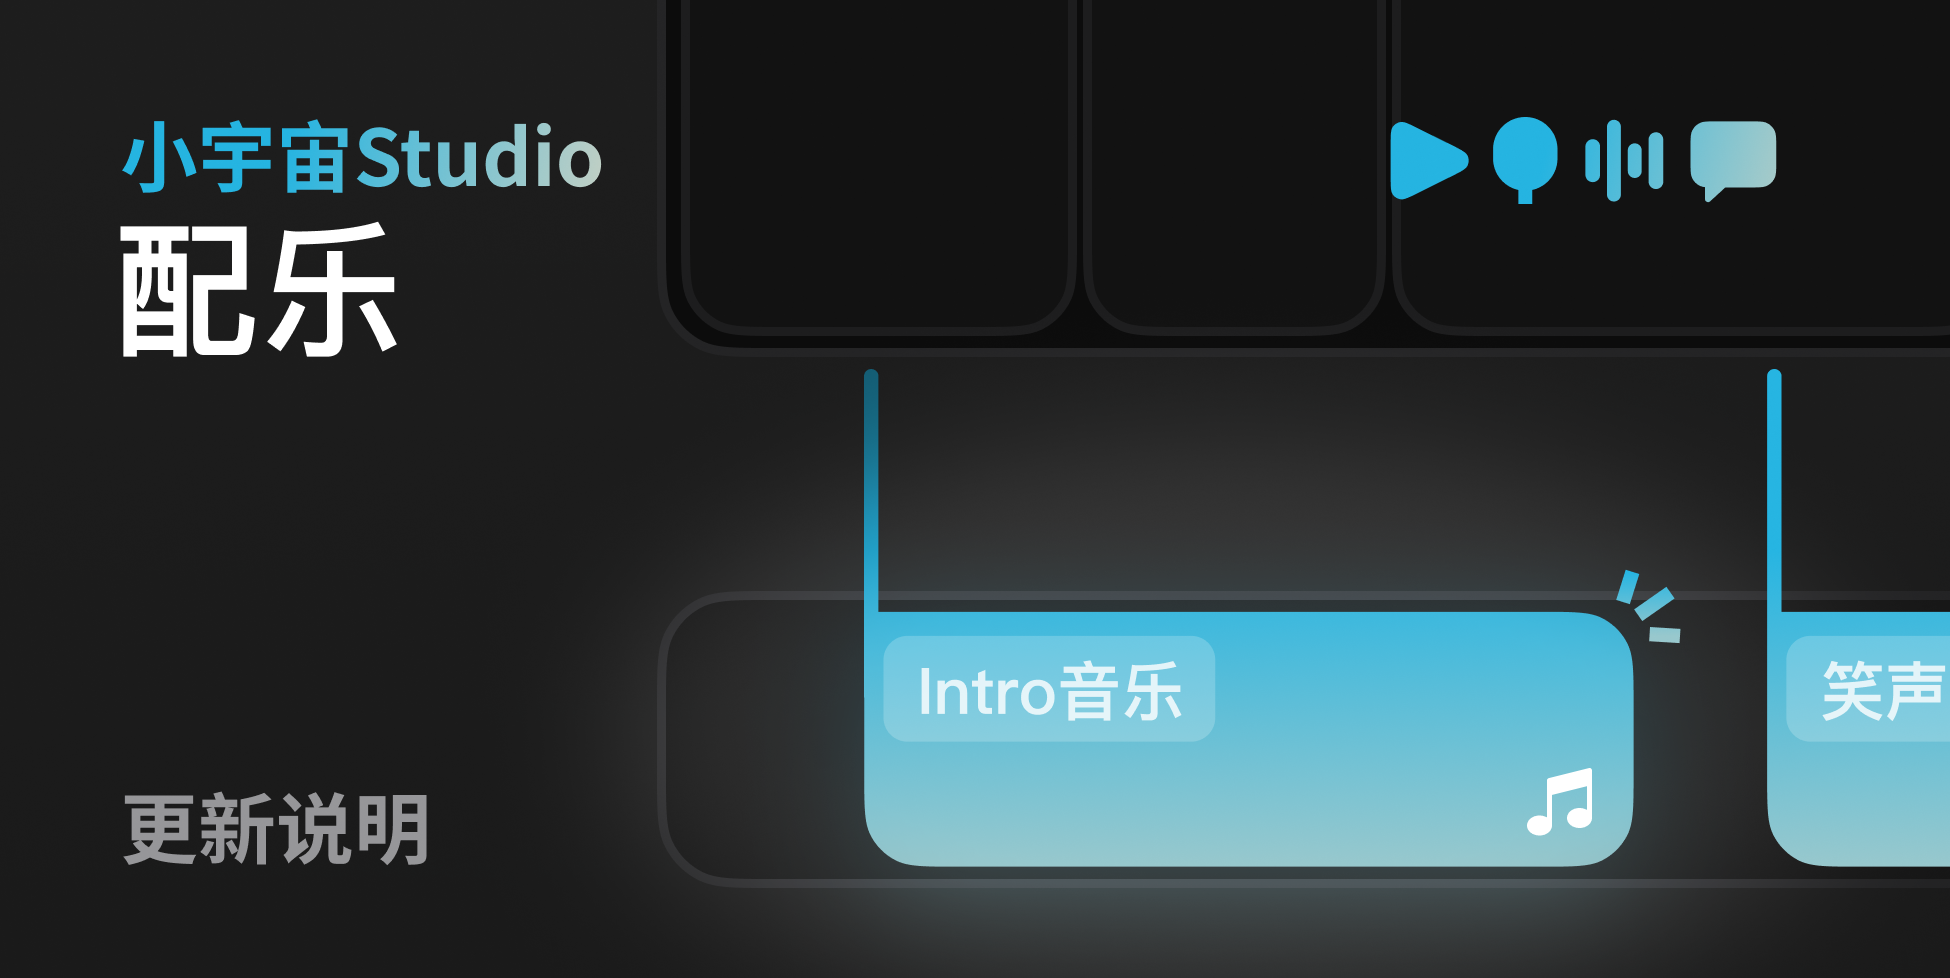 小宇宙Studio 2月27日功能更新介绍：新增「配乐音轨」